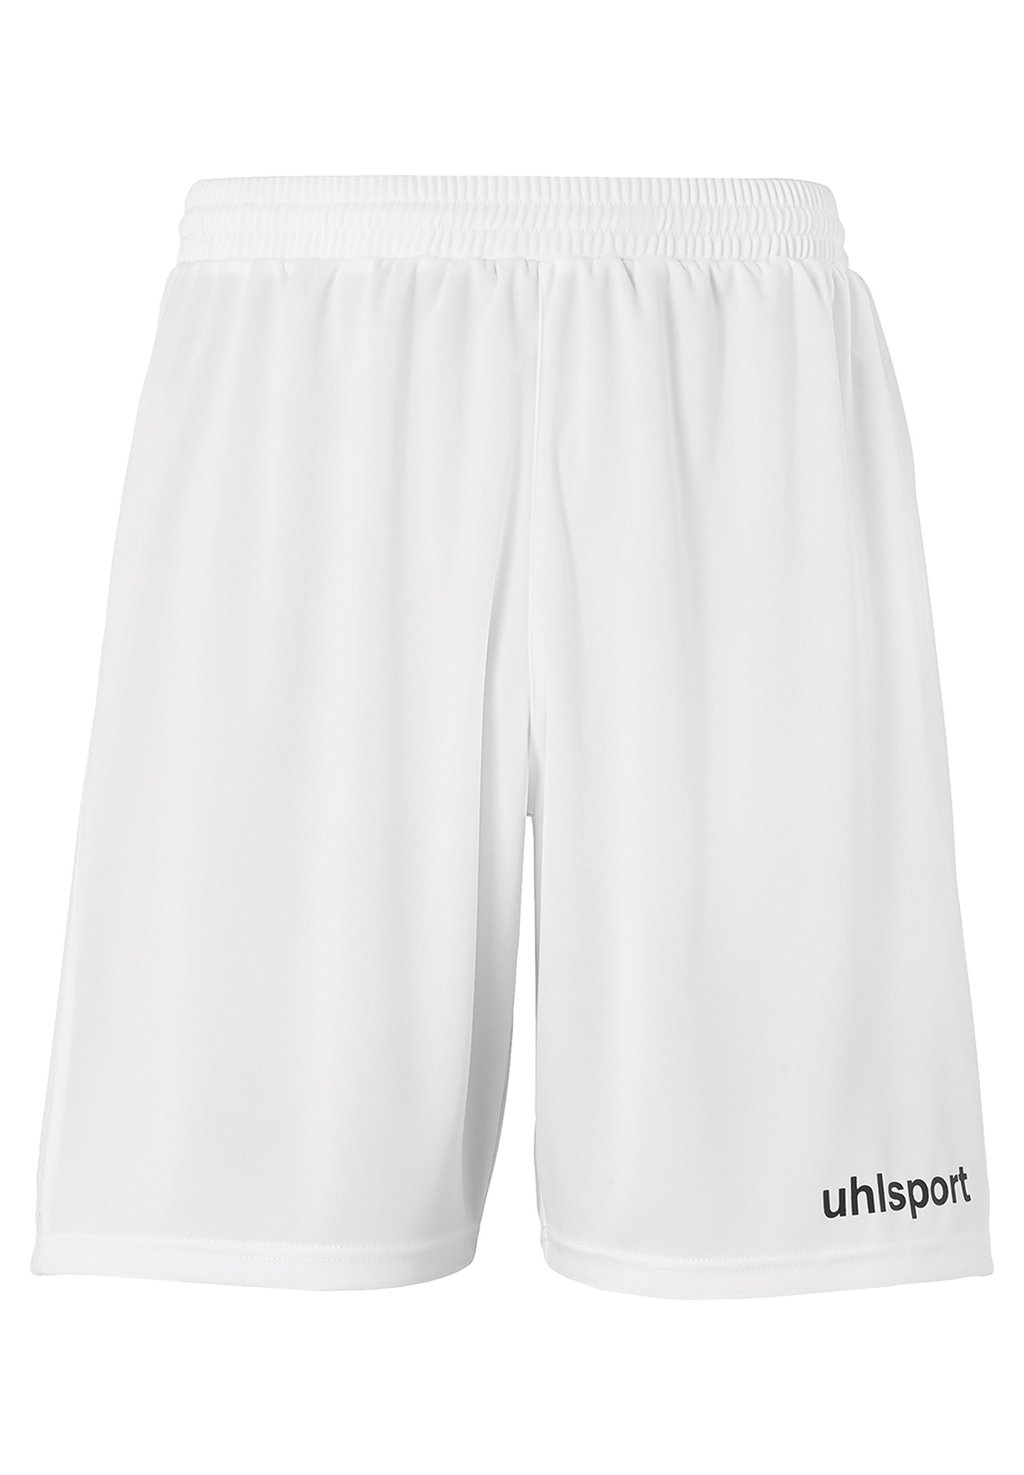 Спортивные шорты PERFORMANCE uhlsport, цвет weiß schwarz